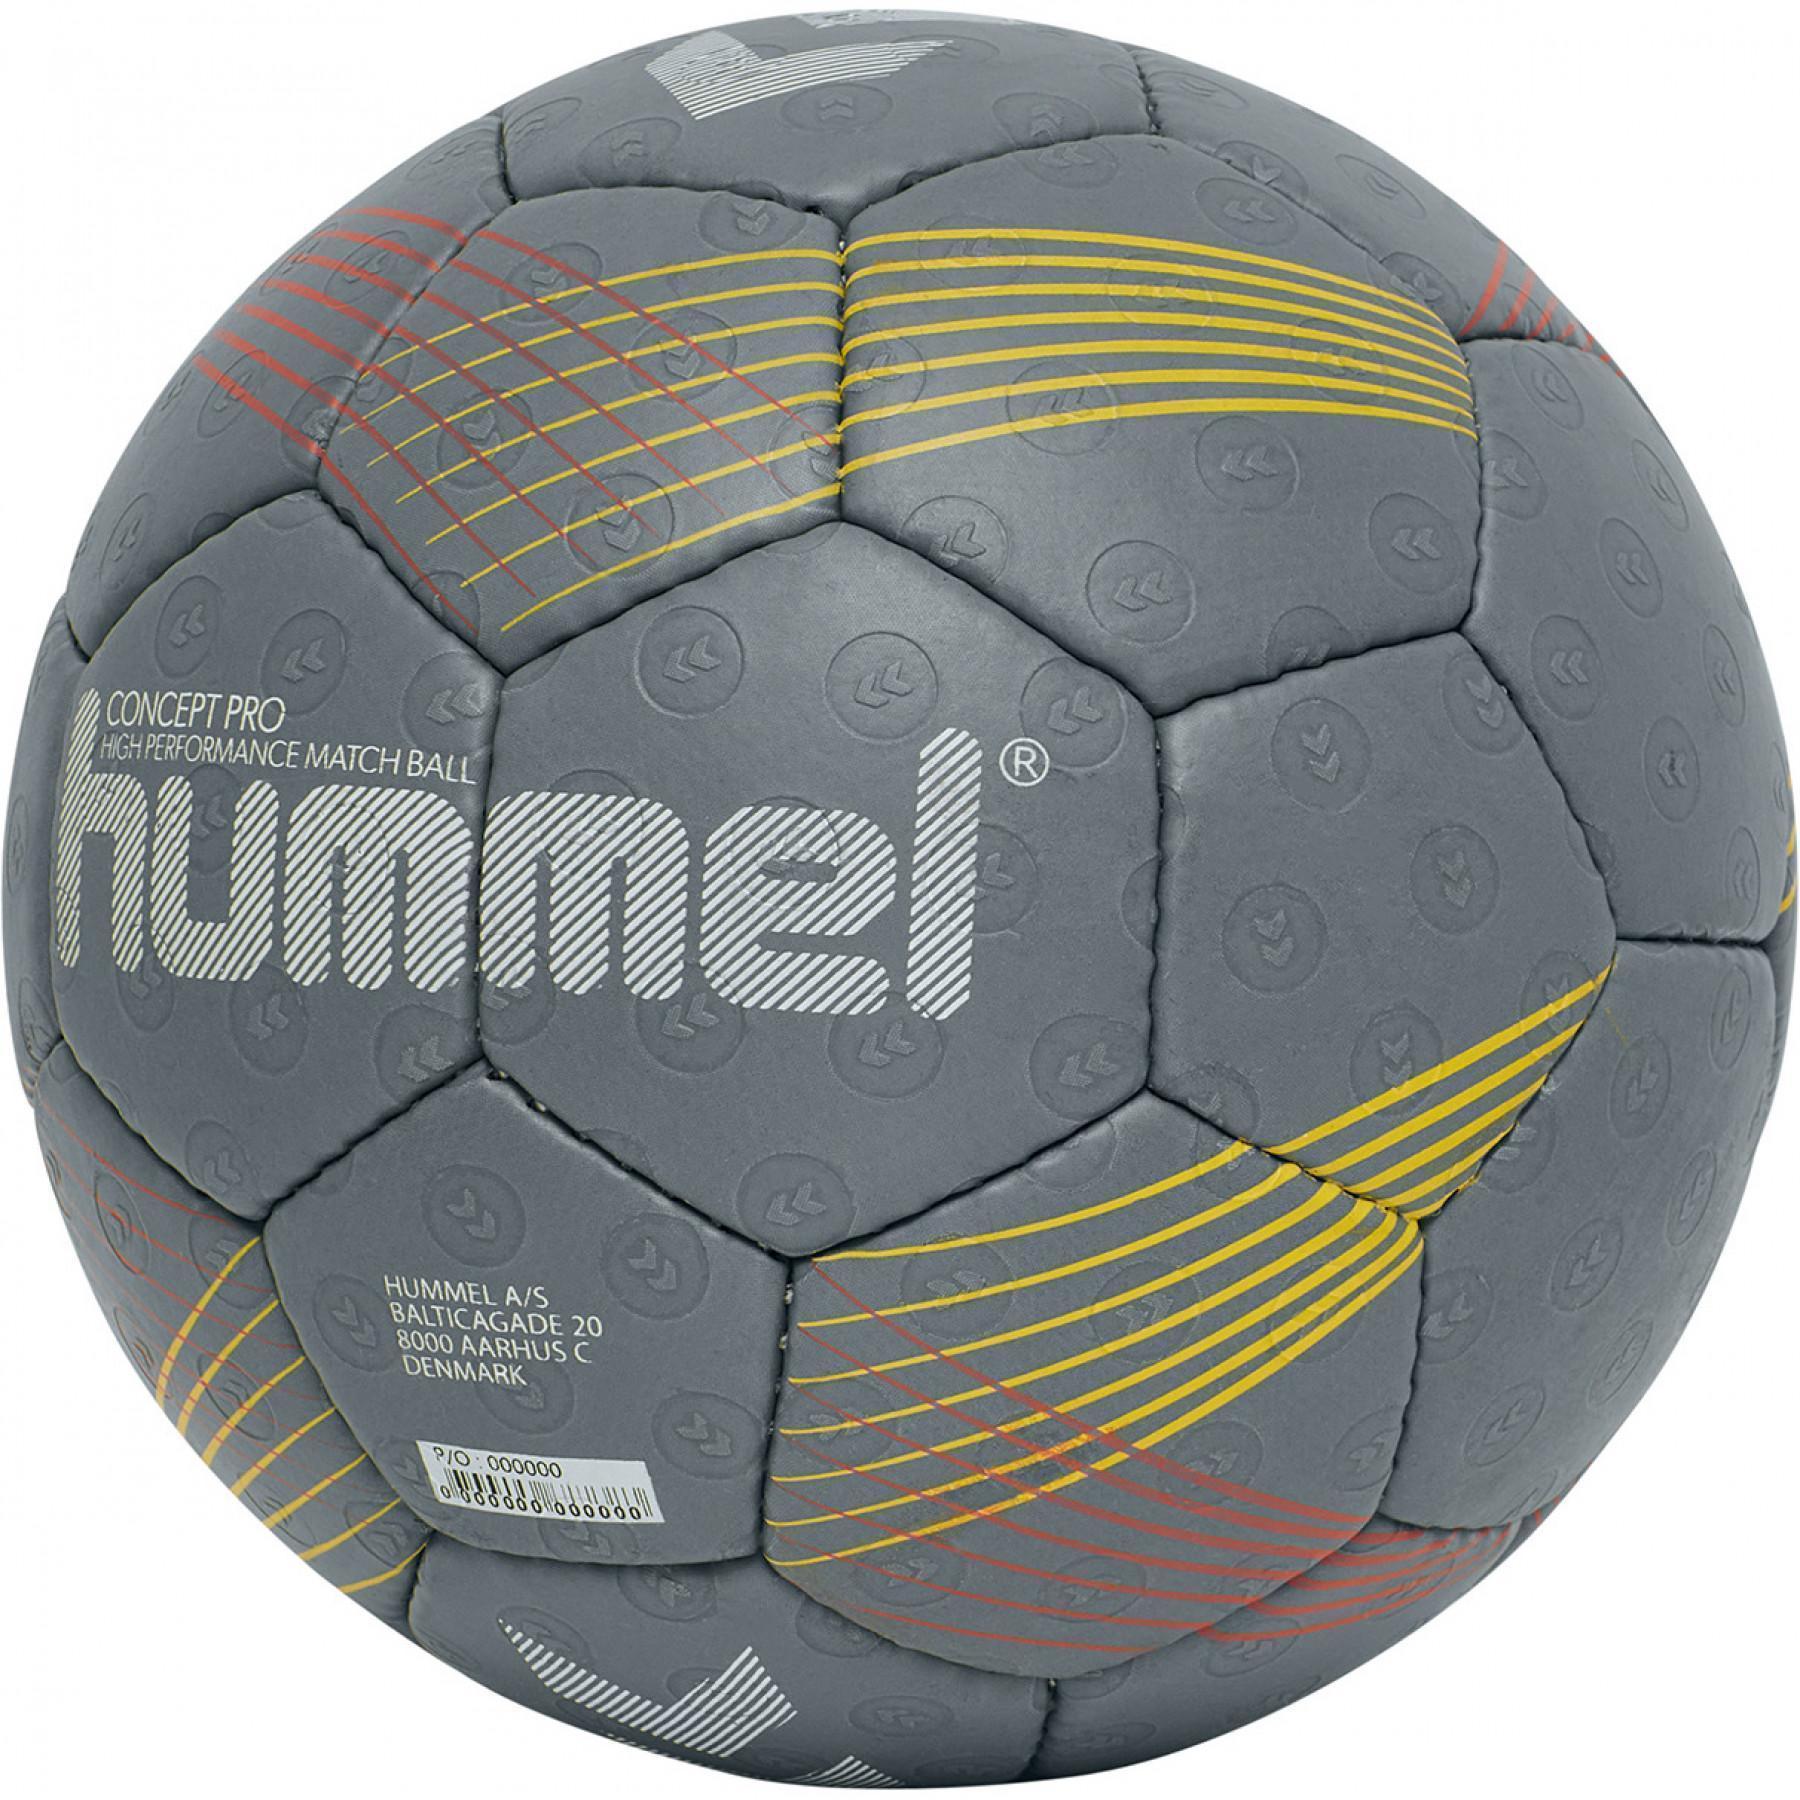 Handball Hummel concept hmlPRO hb